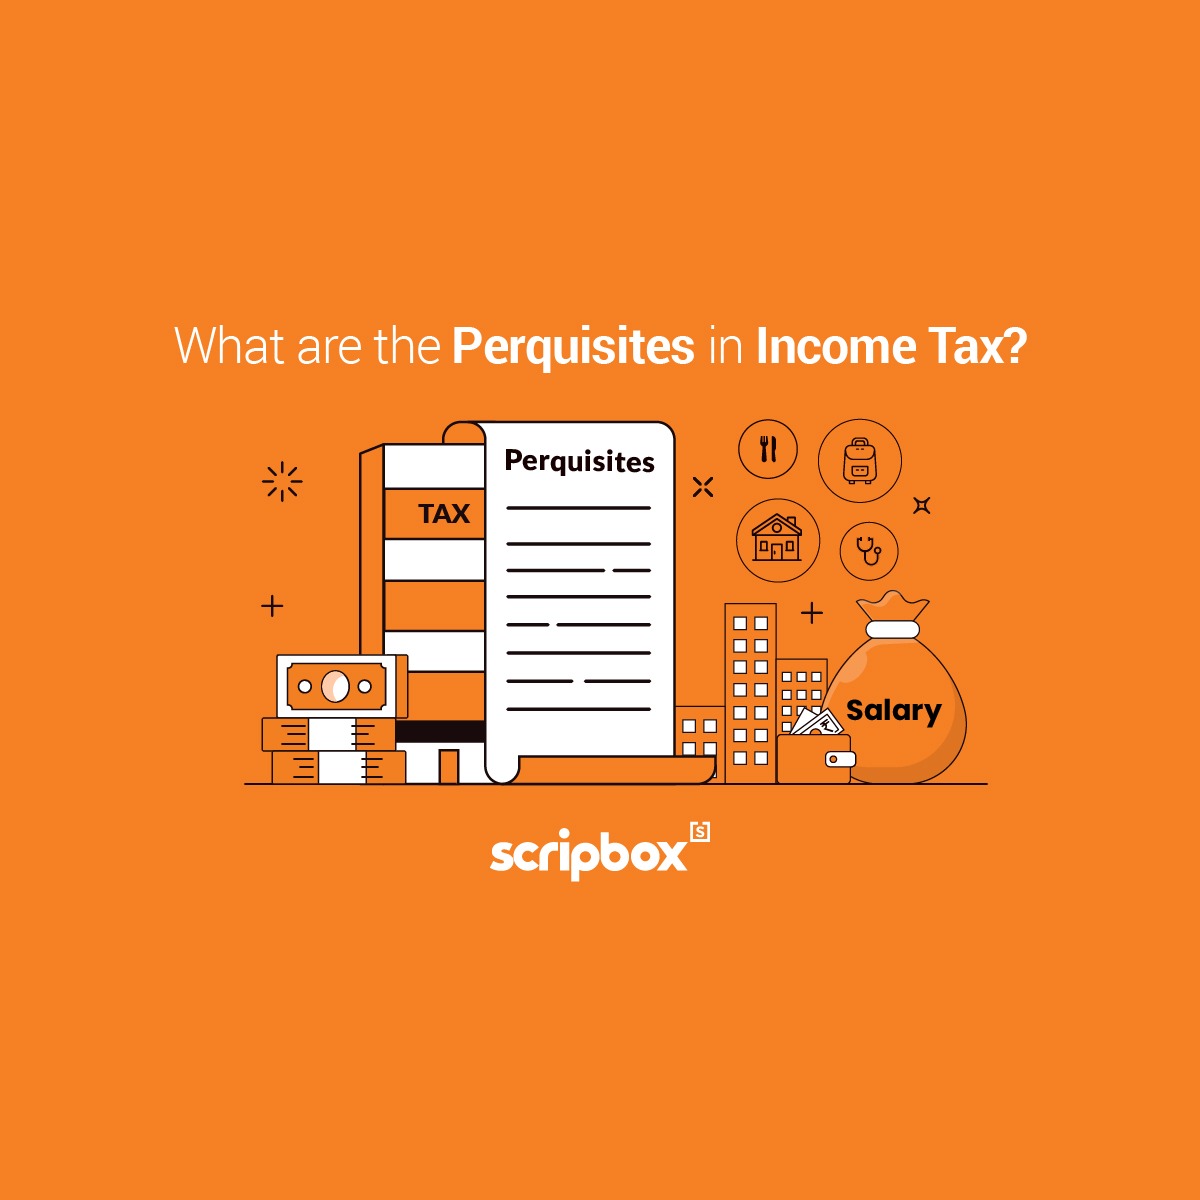 perquisites in income tax